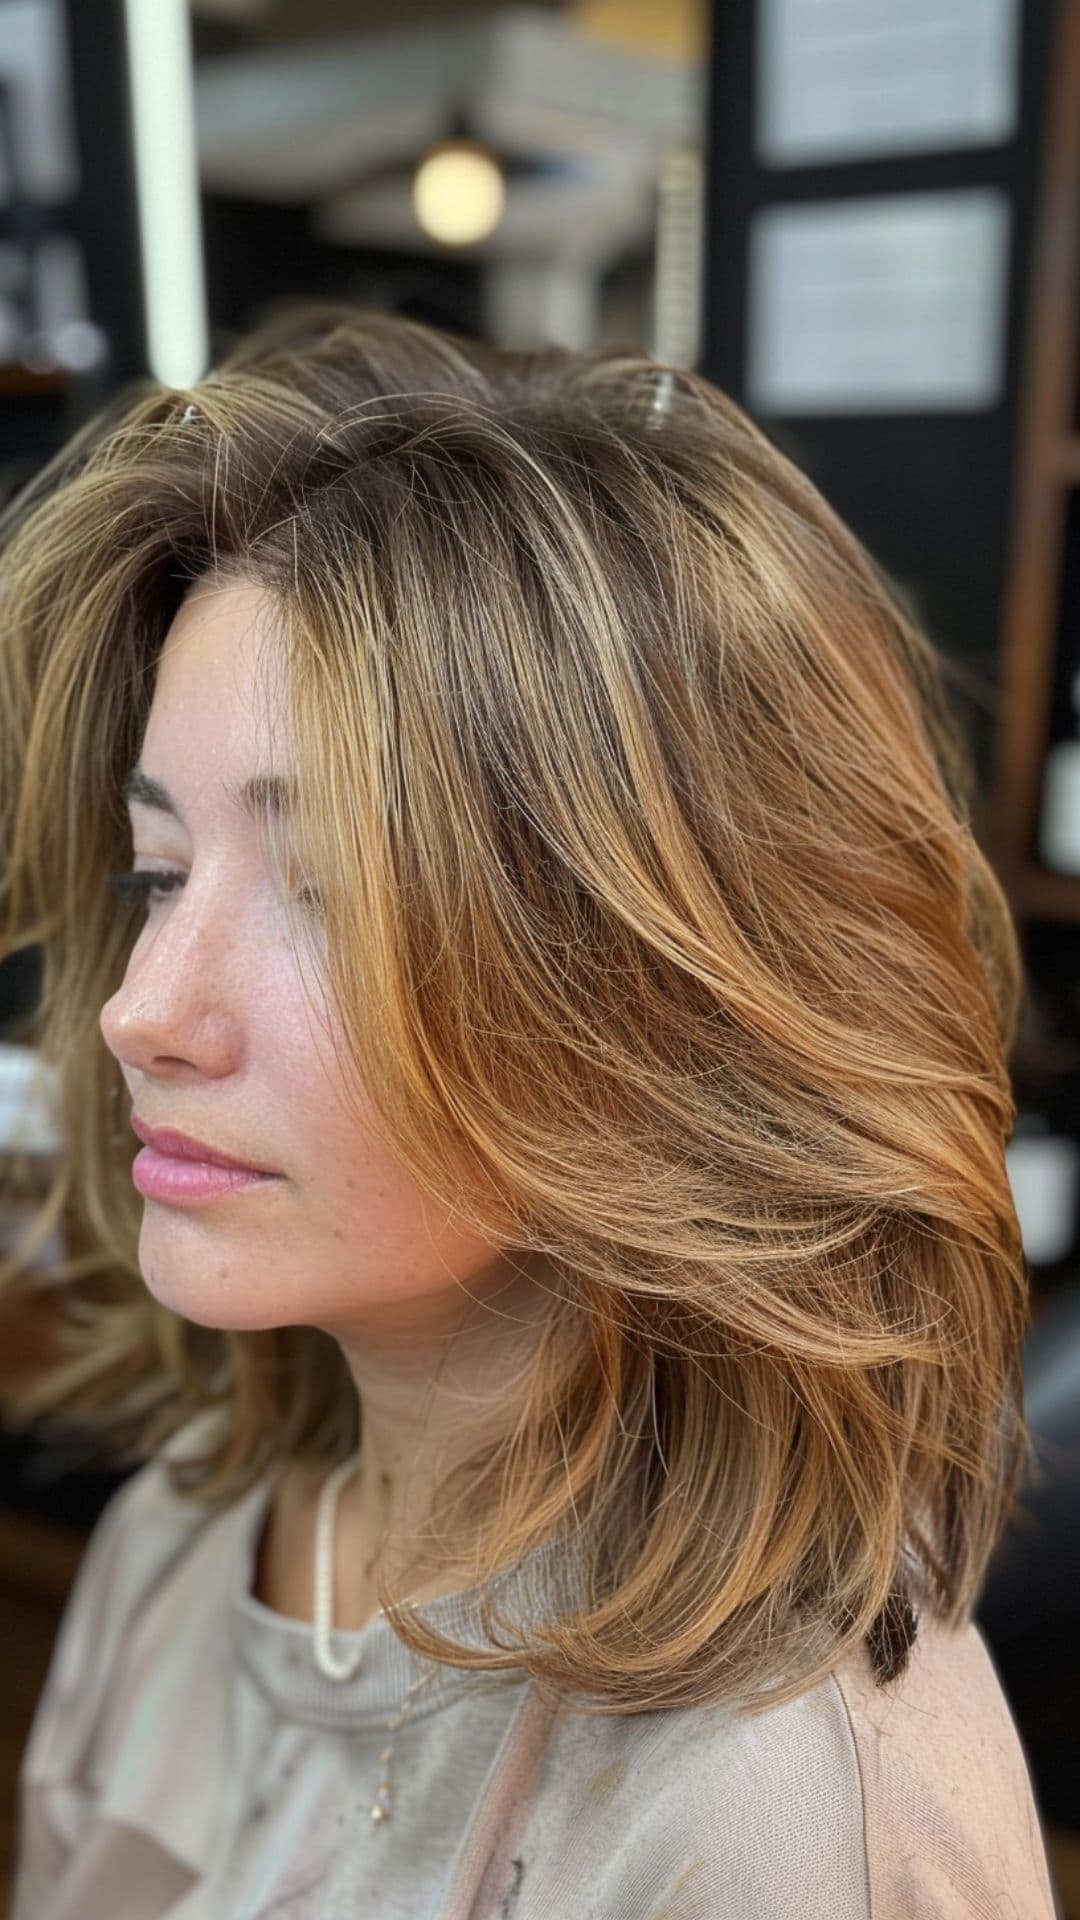 A woman modelling a golden caramel hair highlights.